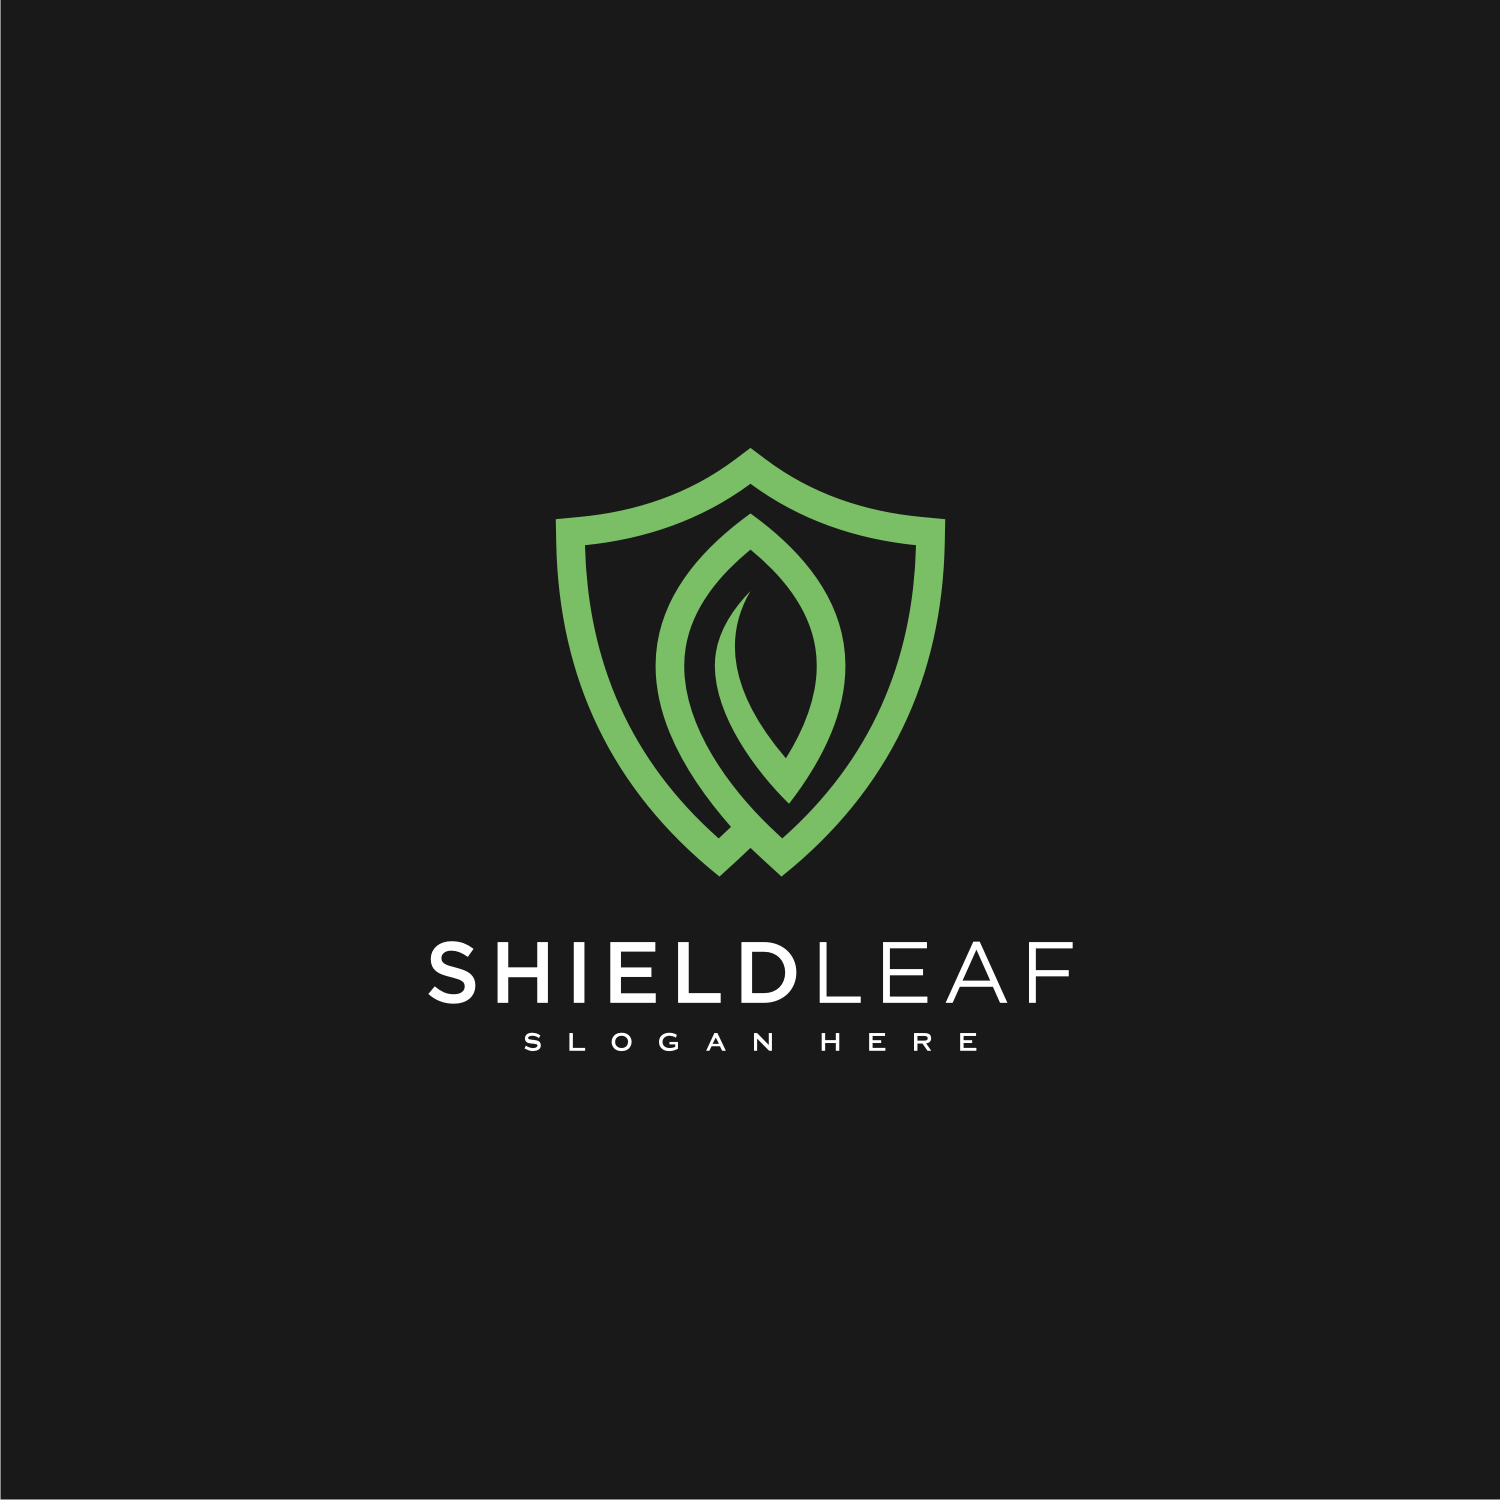 Shield Leaf Logo Vector Design cove rimage.